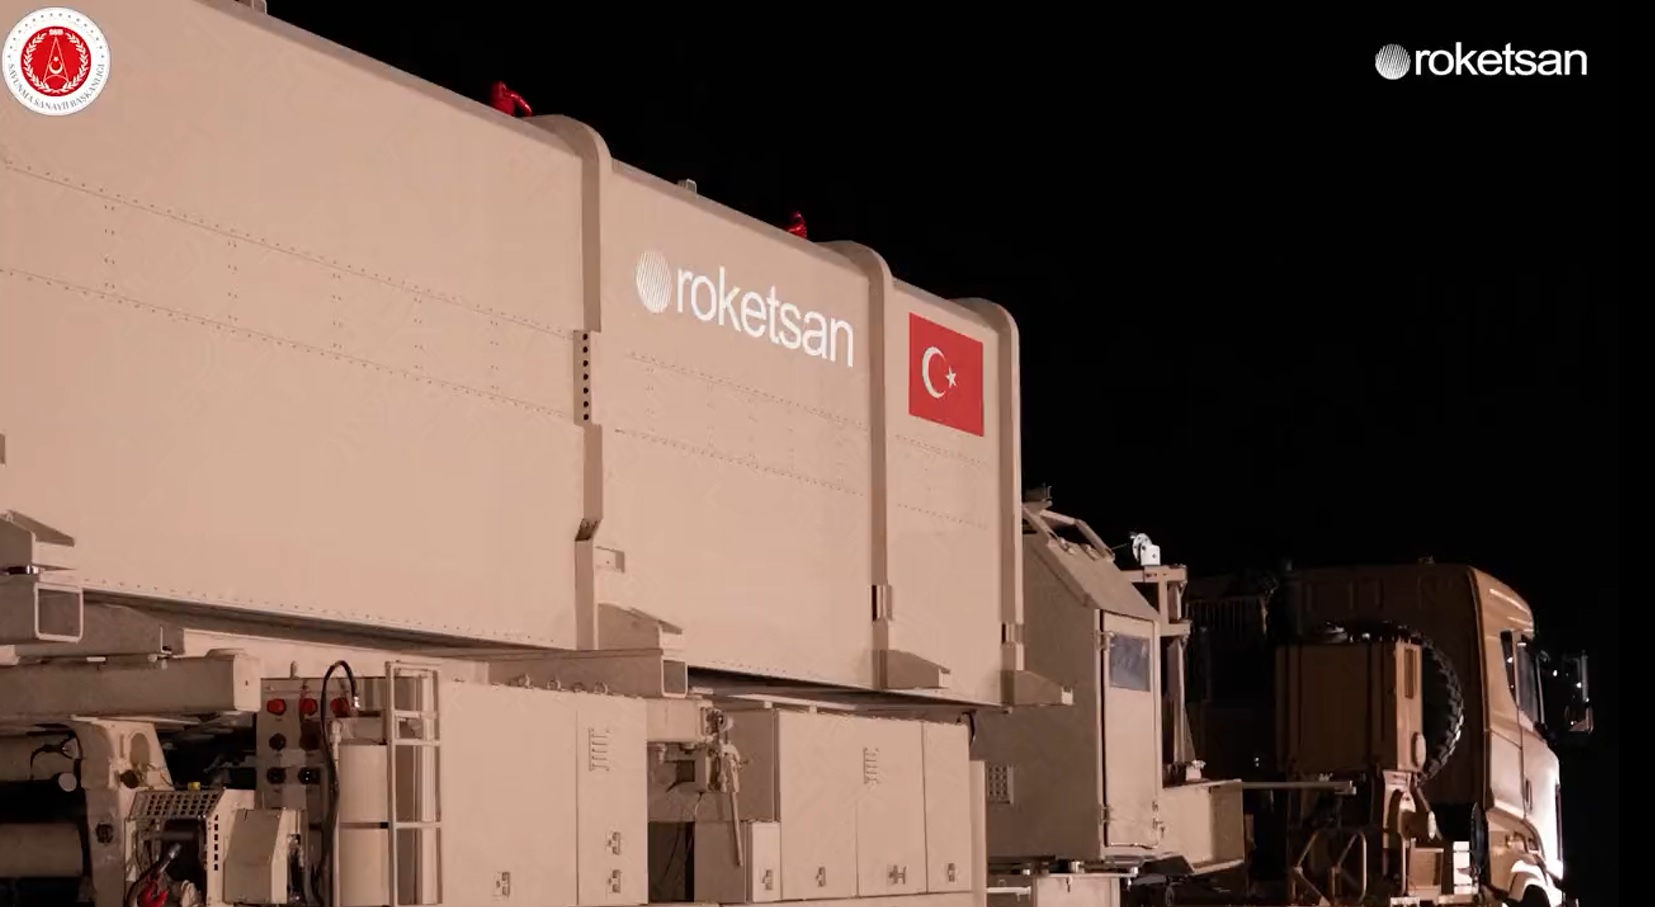 Roketsan onthult CENK, de eerste Turkse ballistische raket voor de middellange afstand die doelen tot op 1.000 km afstand kan raken.